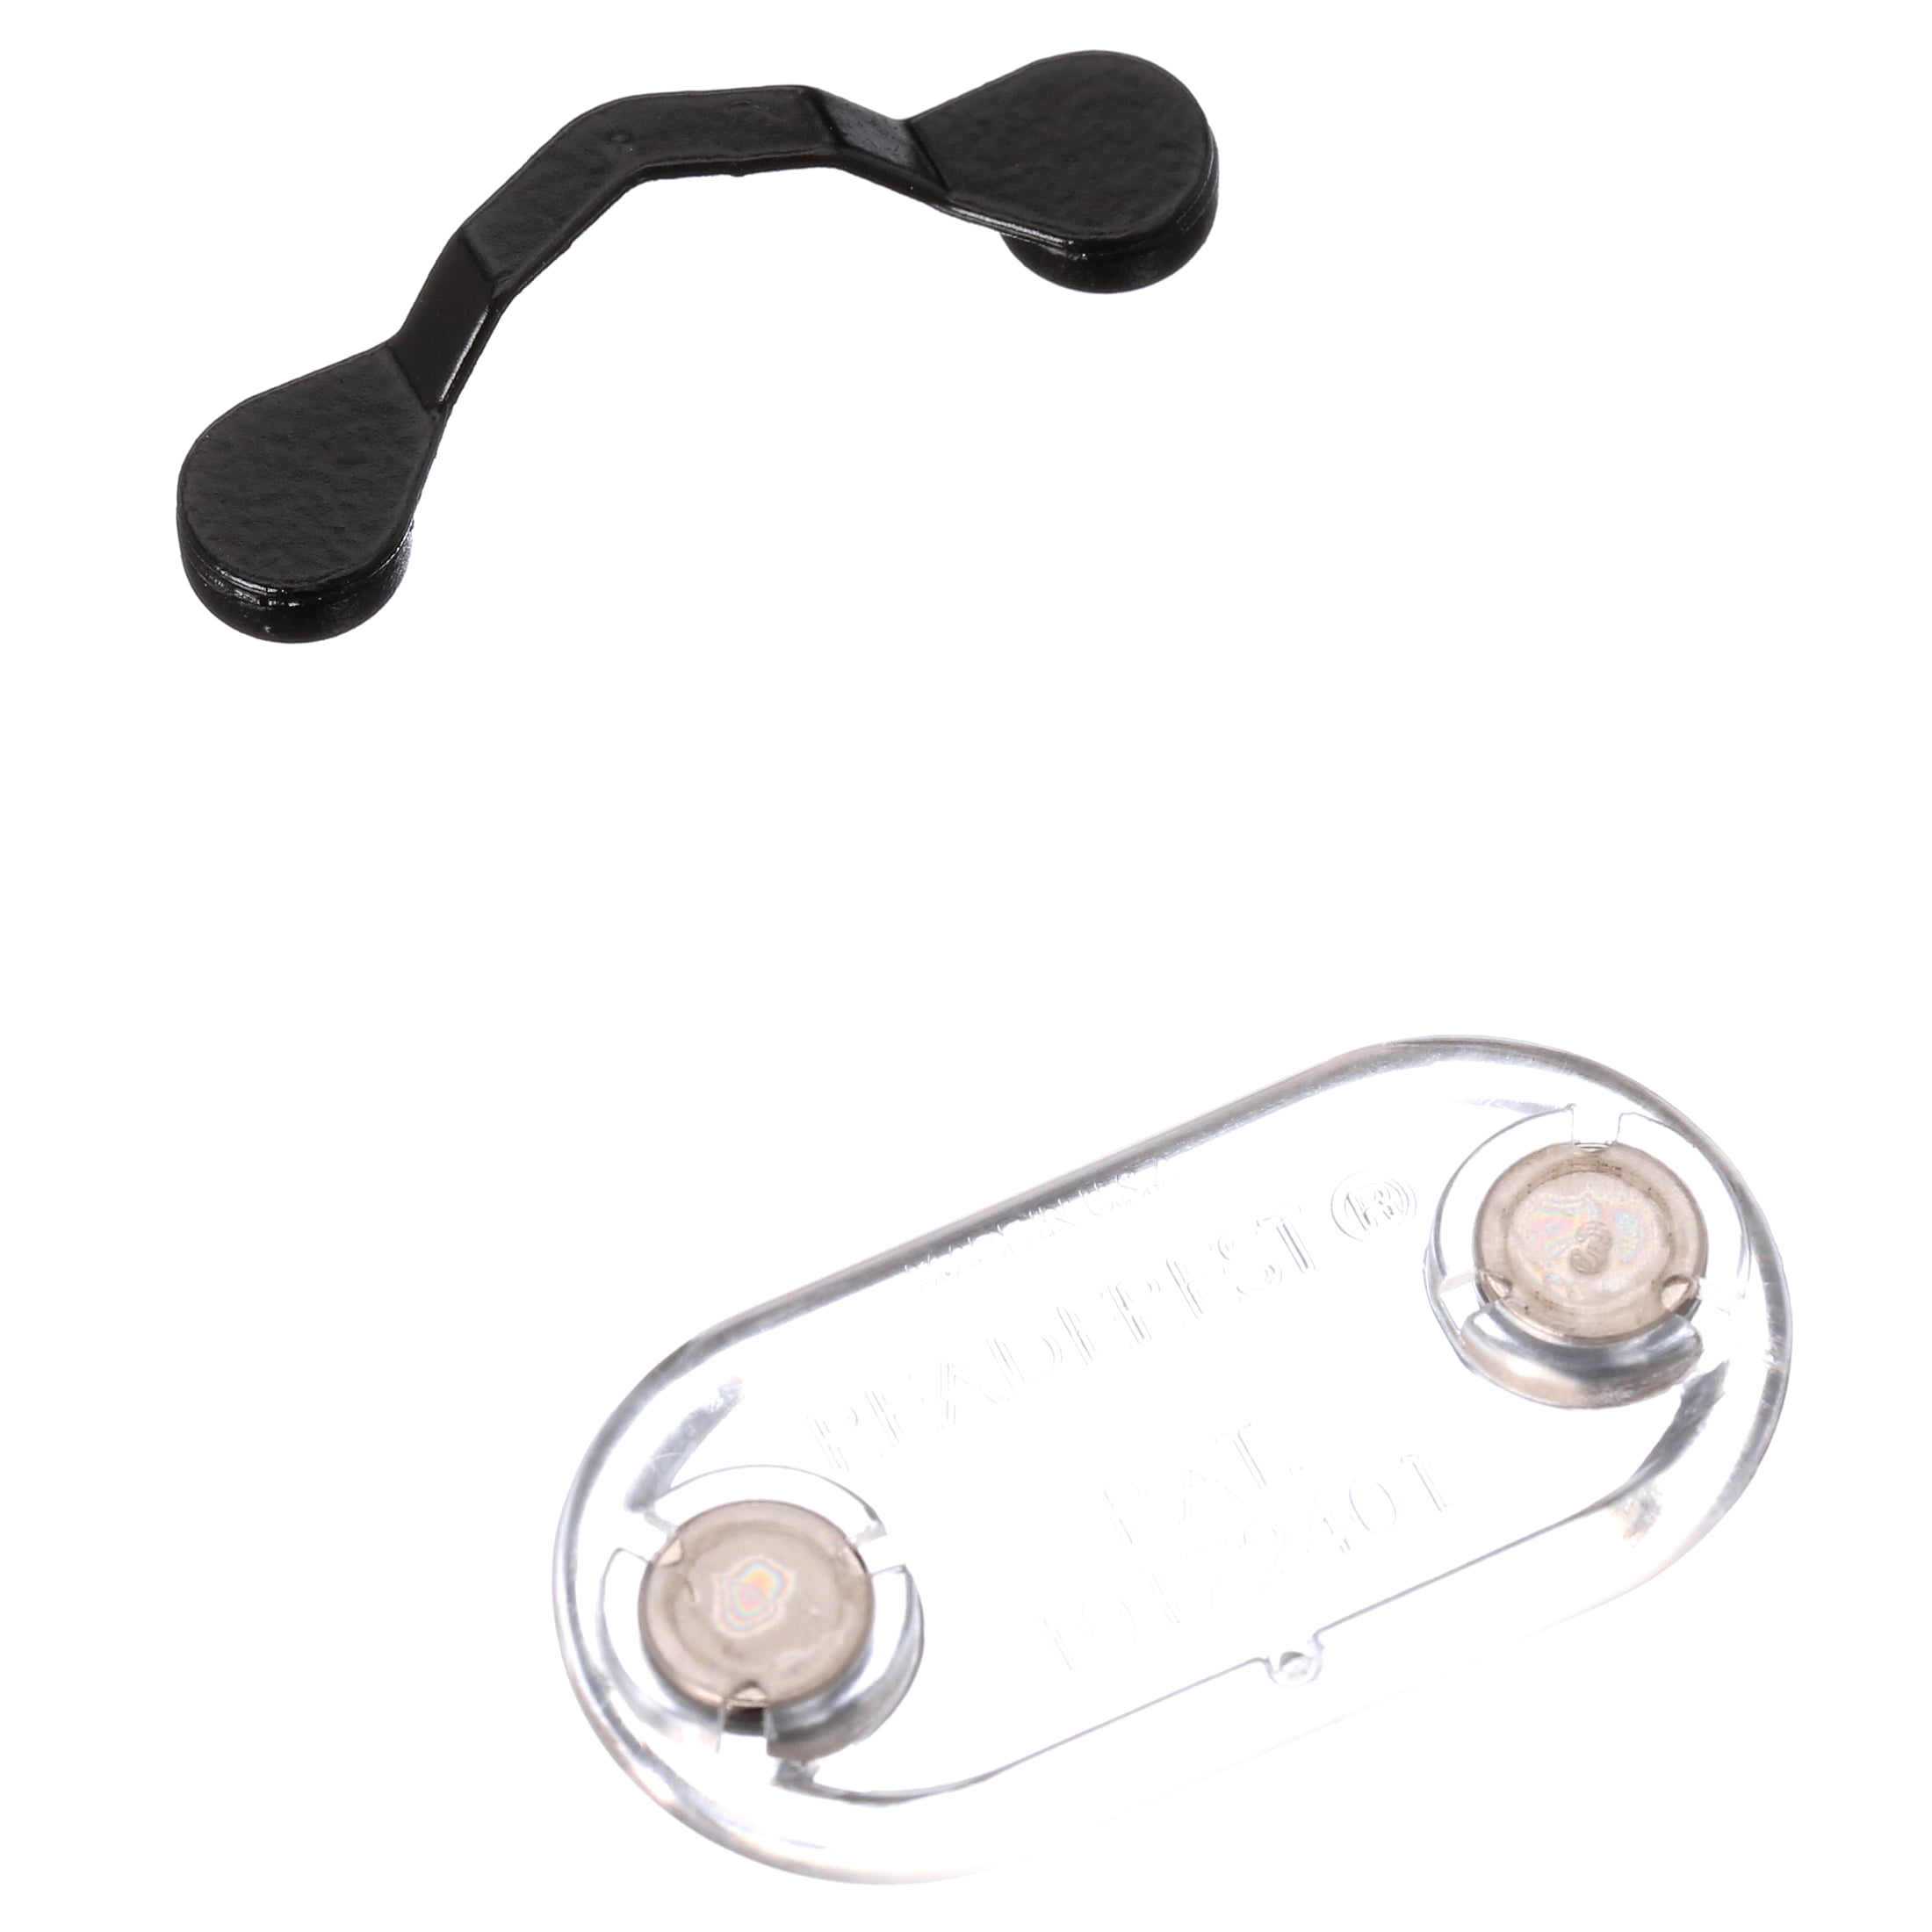 Readerest Classic Magnetic Eyeglass Holder - Black 